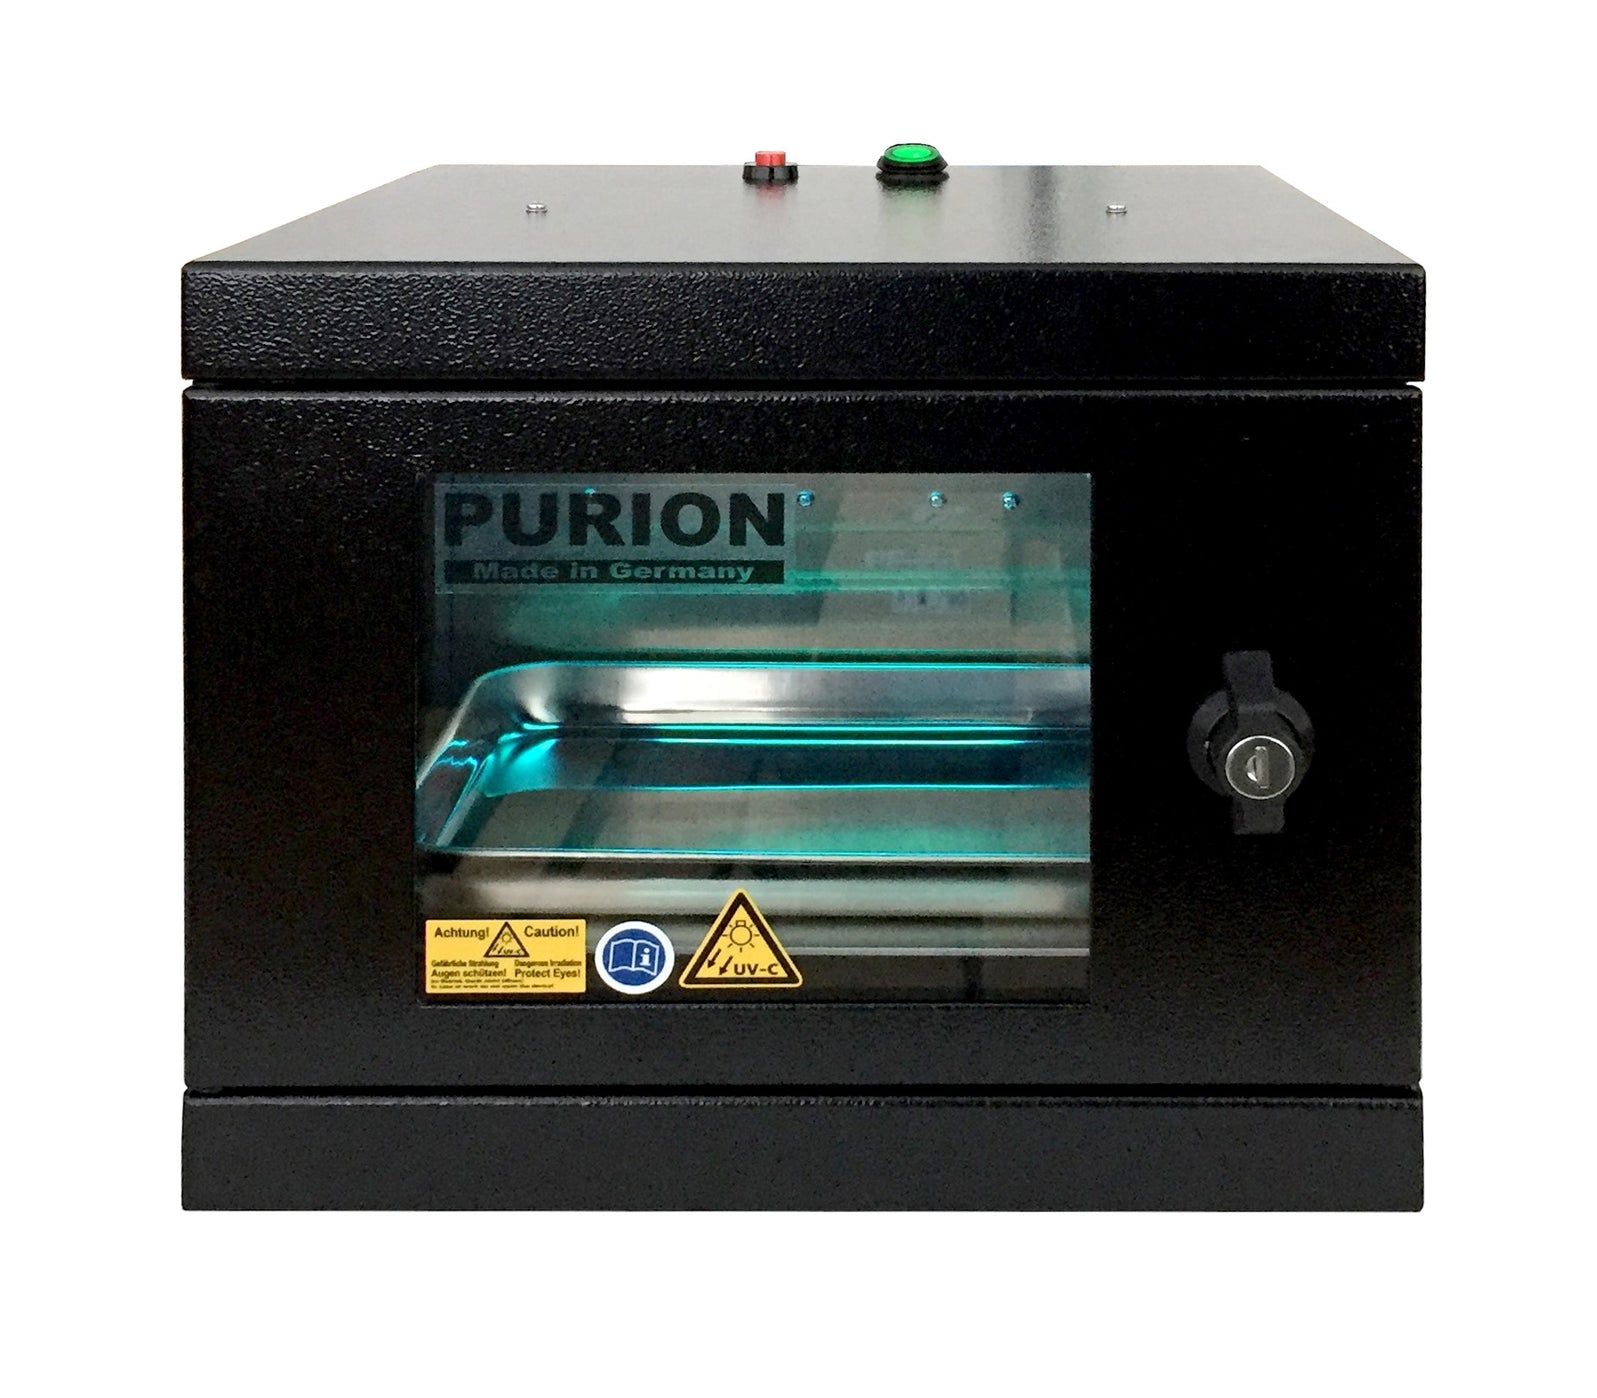 Eine PURION UVC Box Small Bundle-Maschine mit dem Wort PURION darauf, die UVC BOX-Technologie zur Desinfektion und Beseitigung von Keimen bietet.